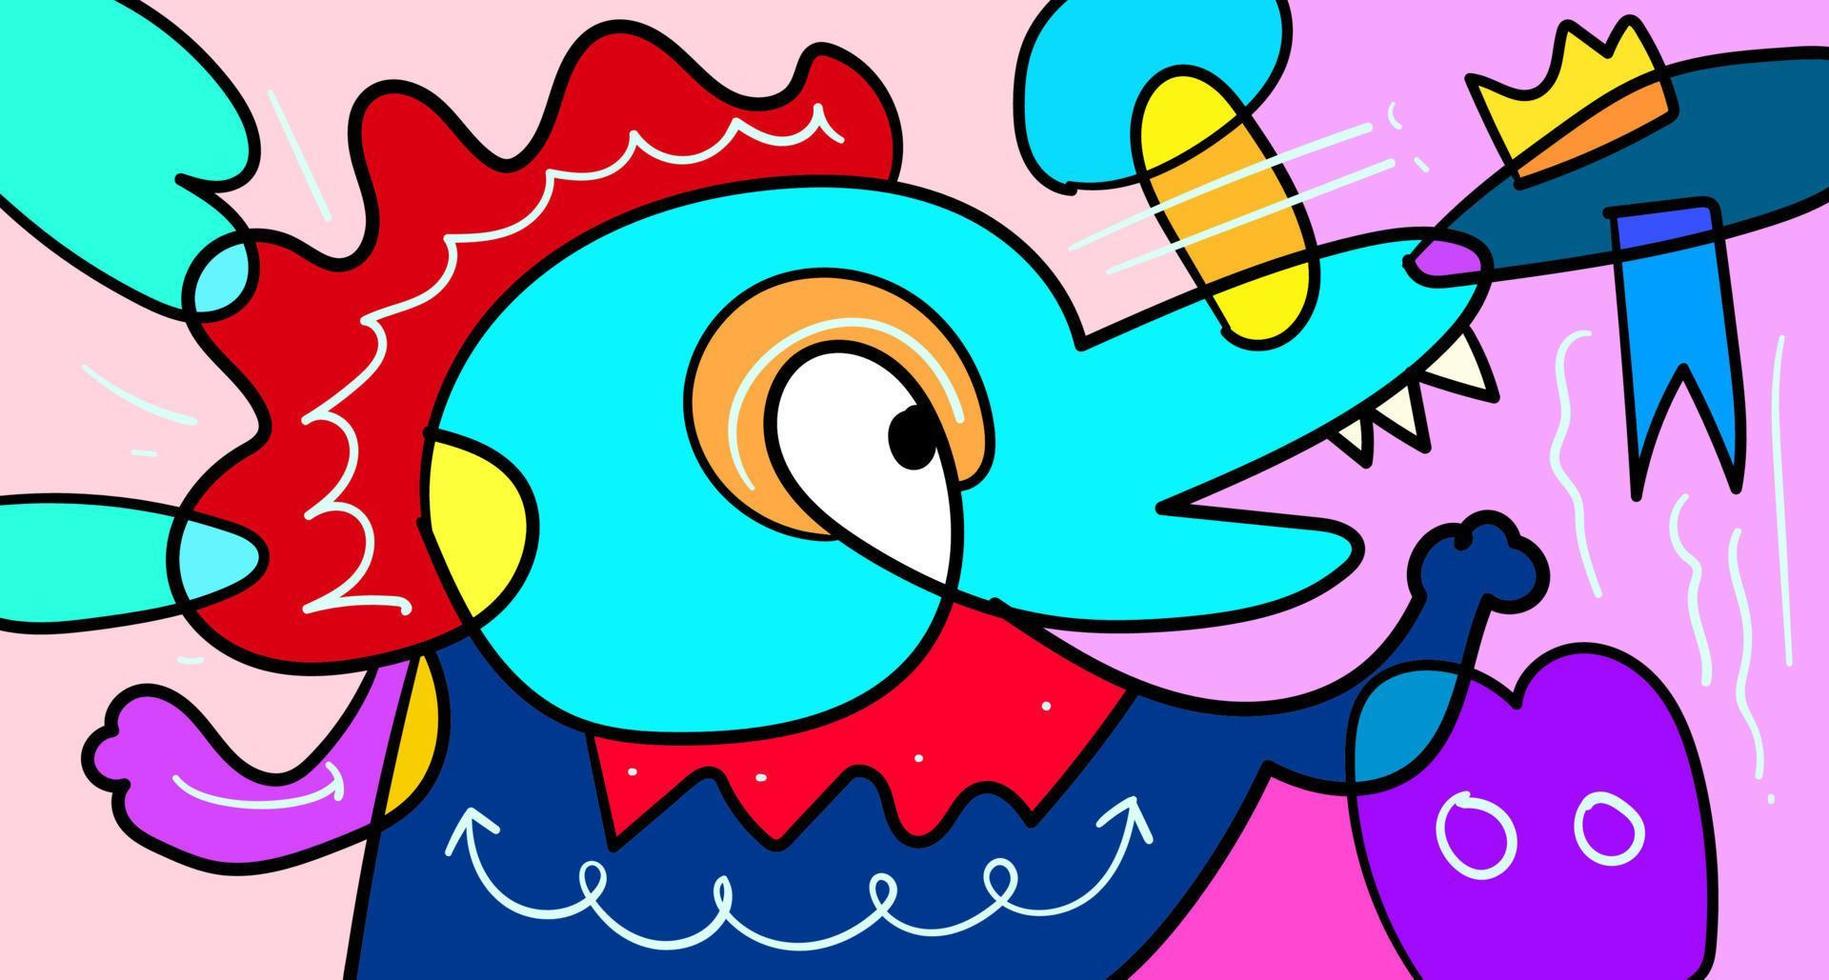 Vektor bunte abstrakte Doodle handgezeichnete Monster- und Tierillustration für digitales Bannerdesign 2023